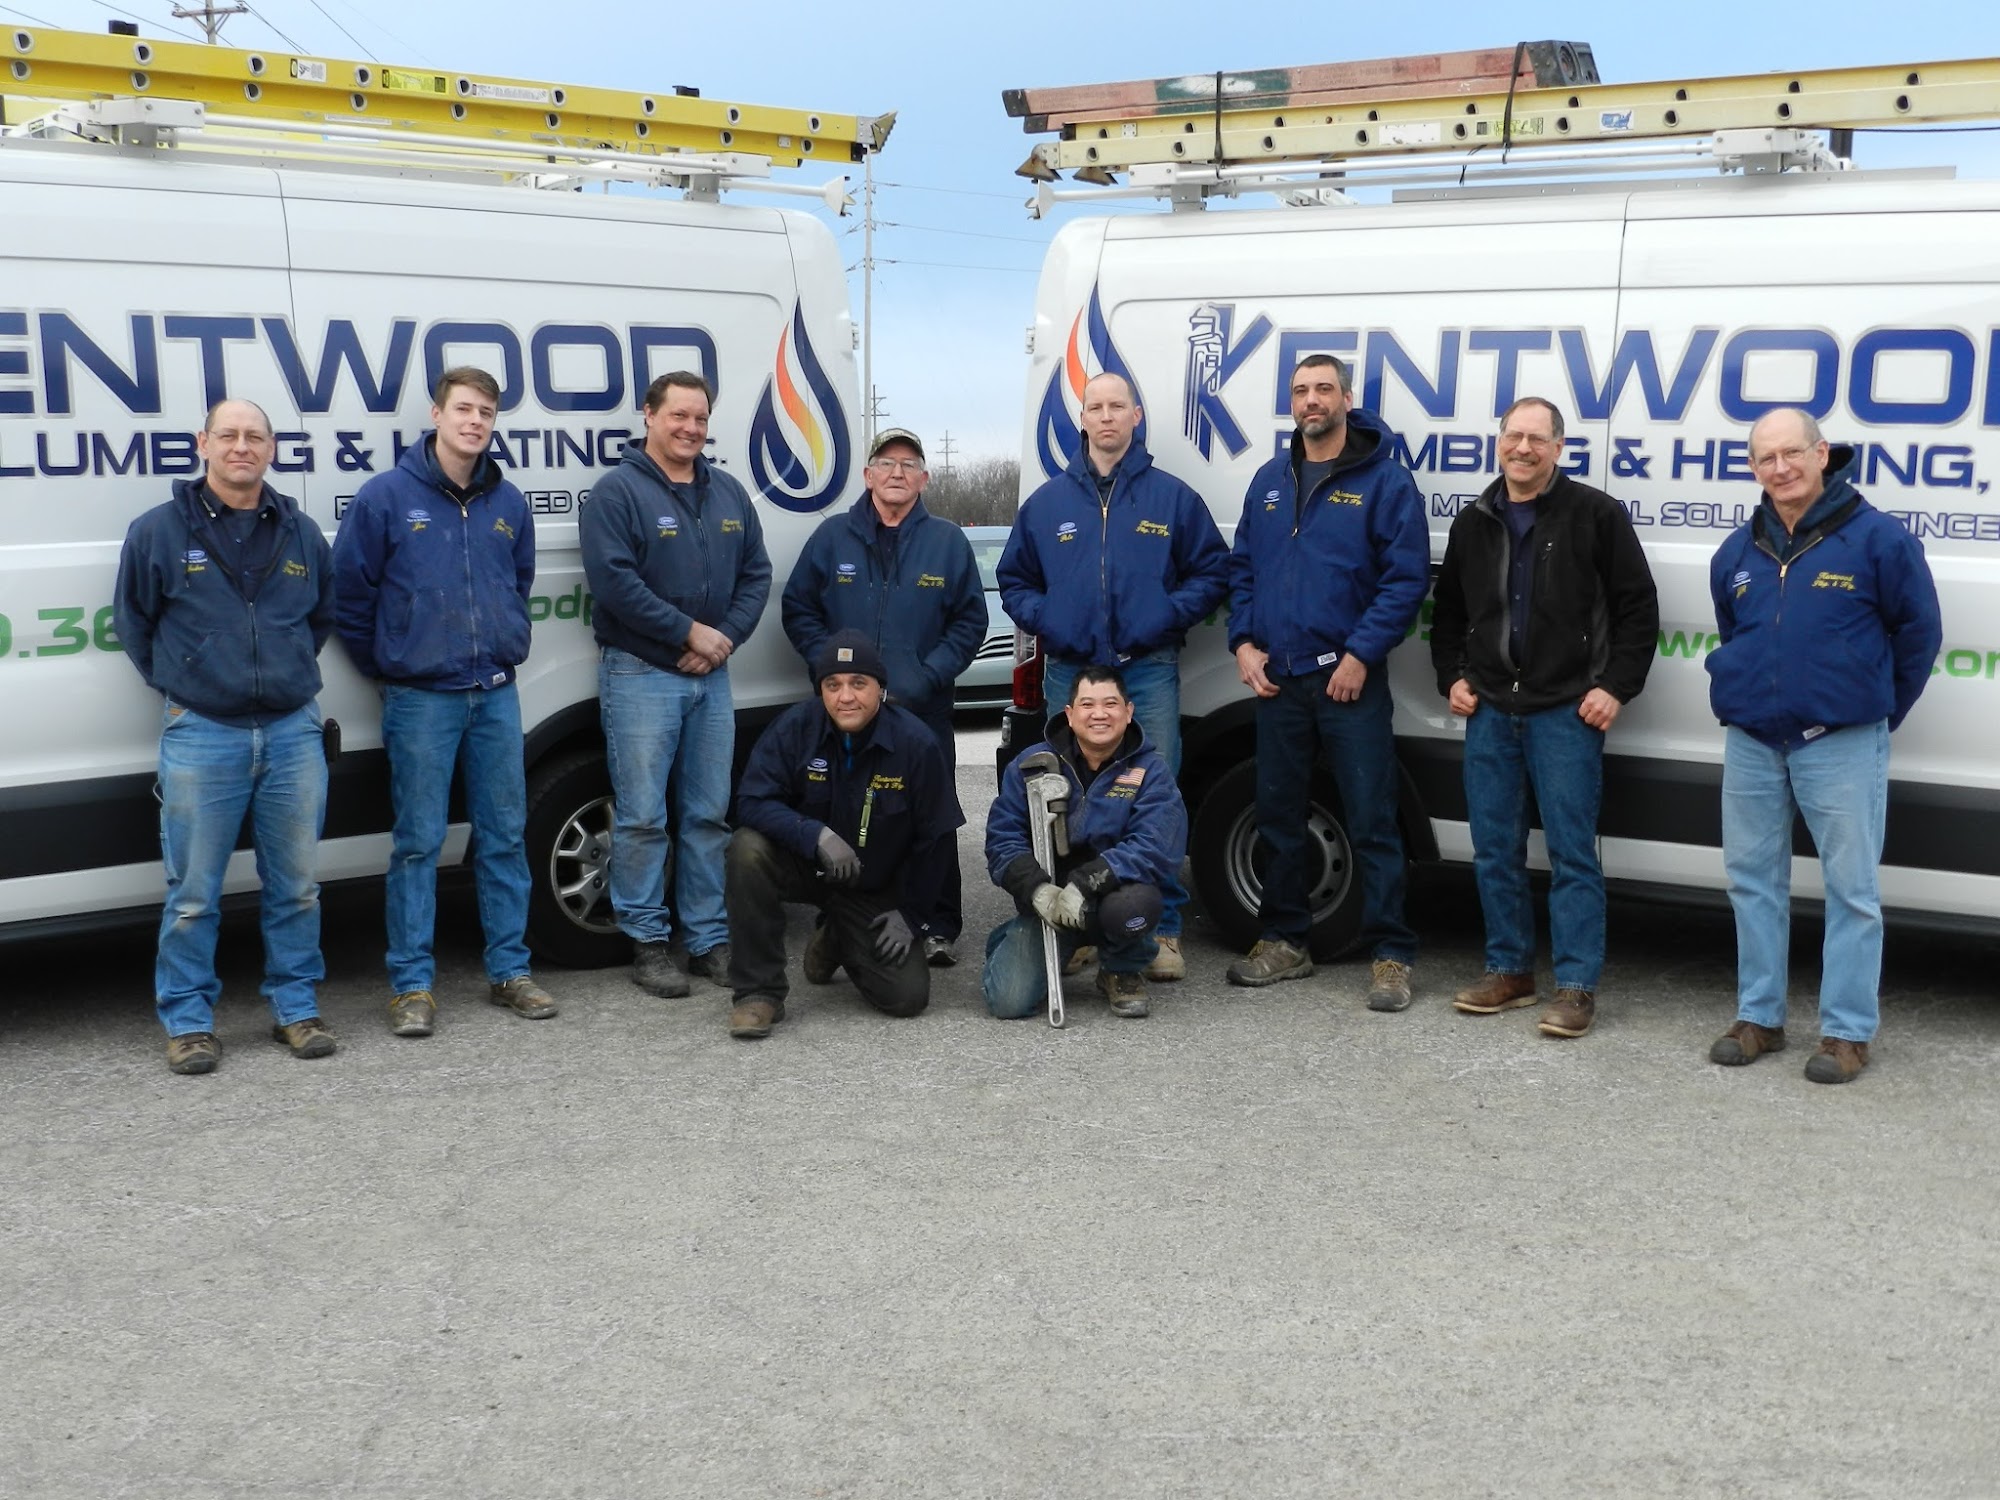 Kentwood Plumbing & Heating, Inc.